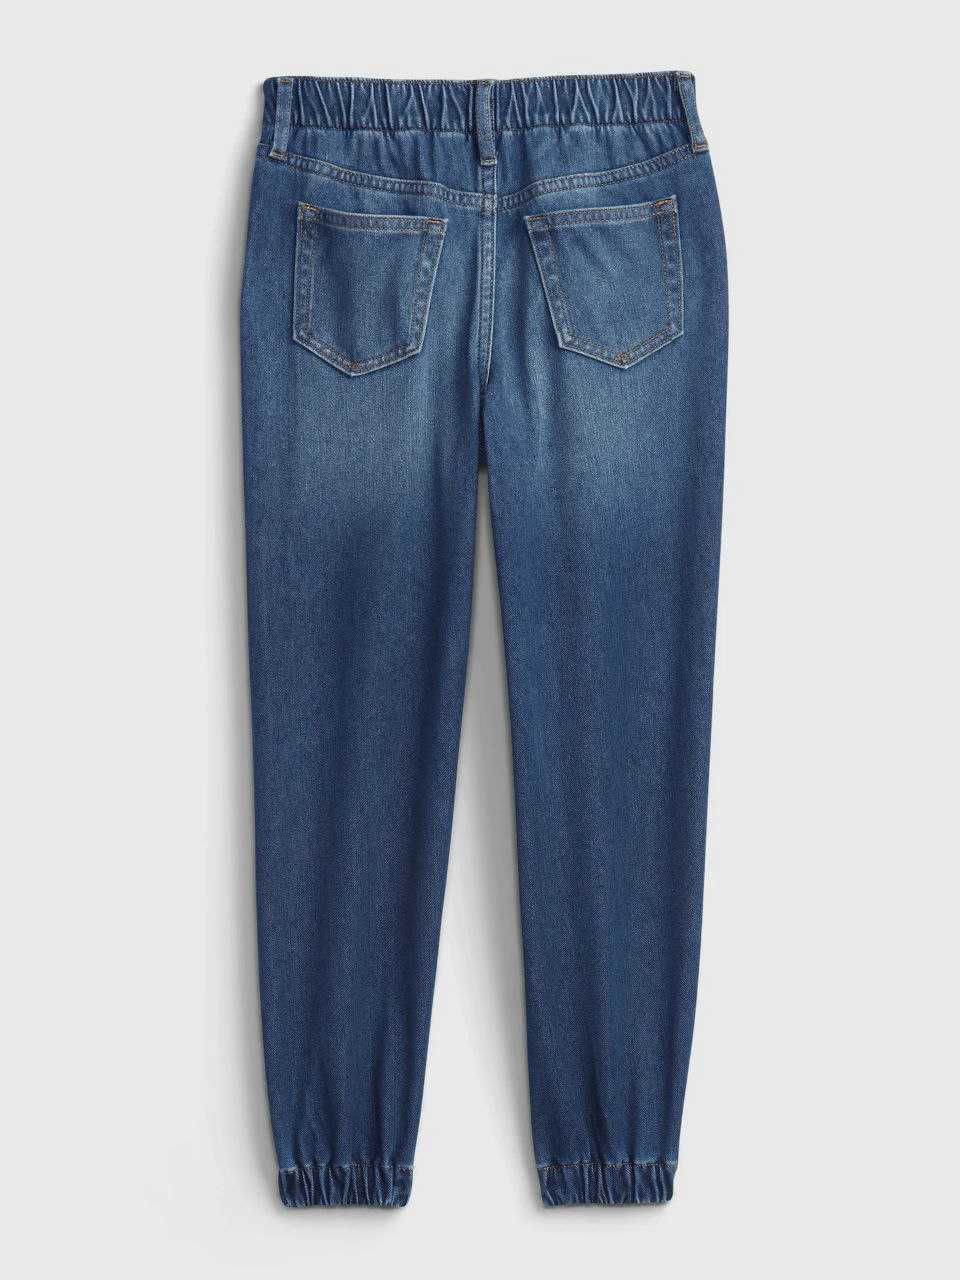 Новые GAP из США джинсы джогеры оригинал на 10-11 лет